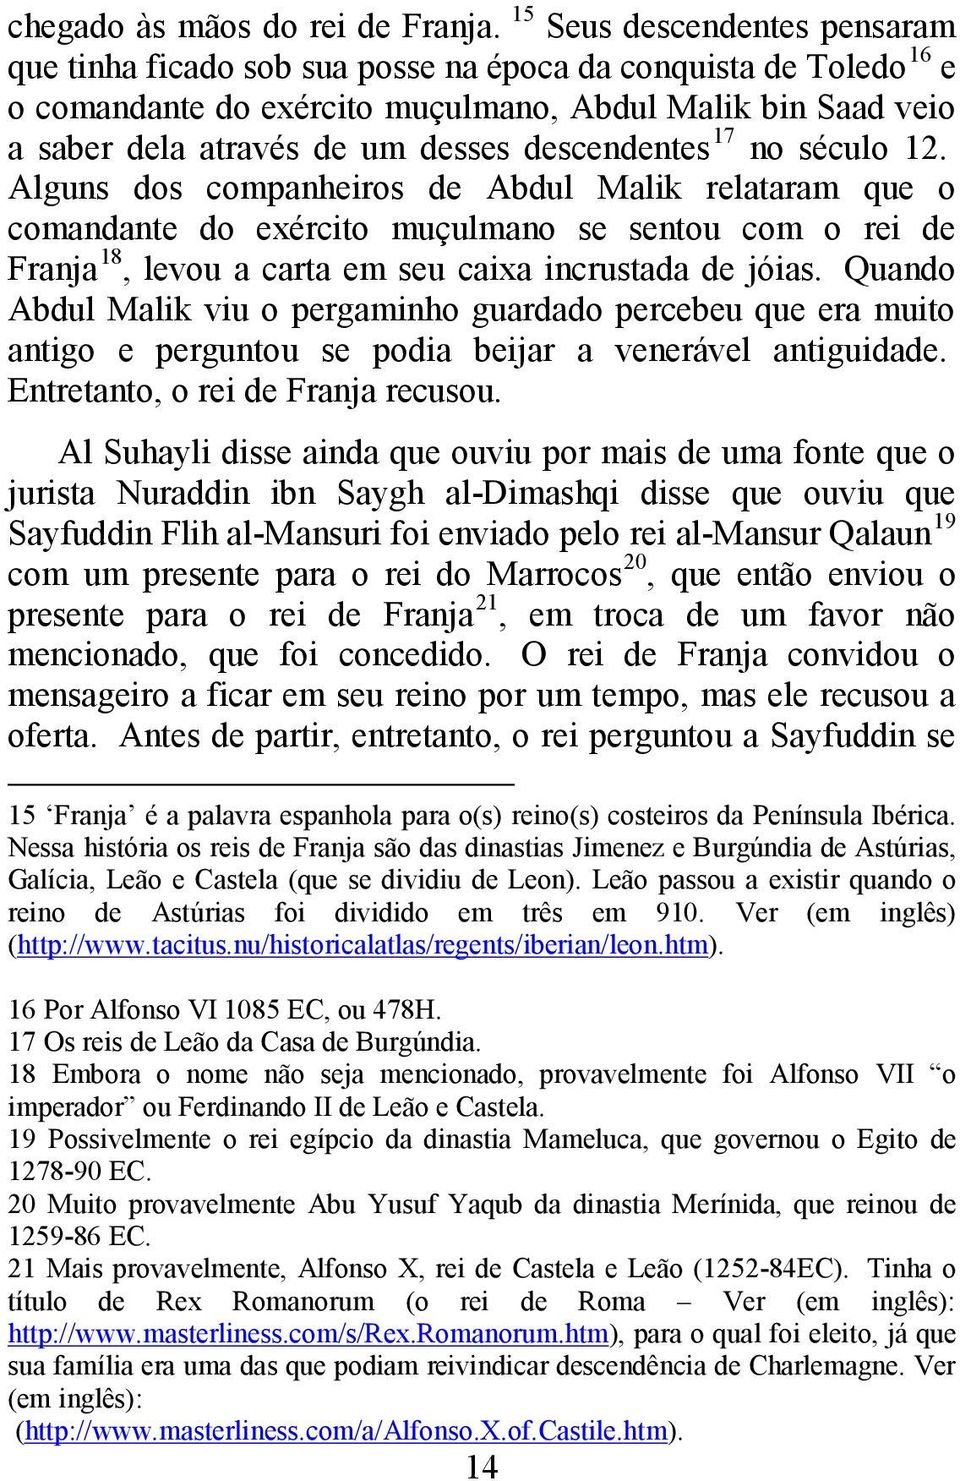 descendentes 17 no século 12. Alguns dos companheiros de Abdul Malik relataram que o comandante do exército muçulmano se sentou com o rei de Franja 18, levou a carta em seu caixa incrustada de jóias.